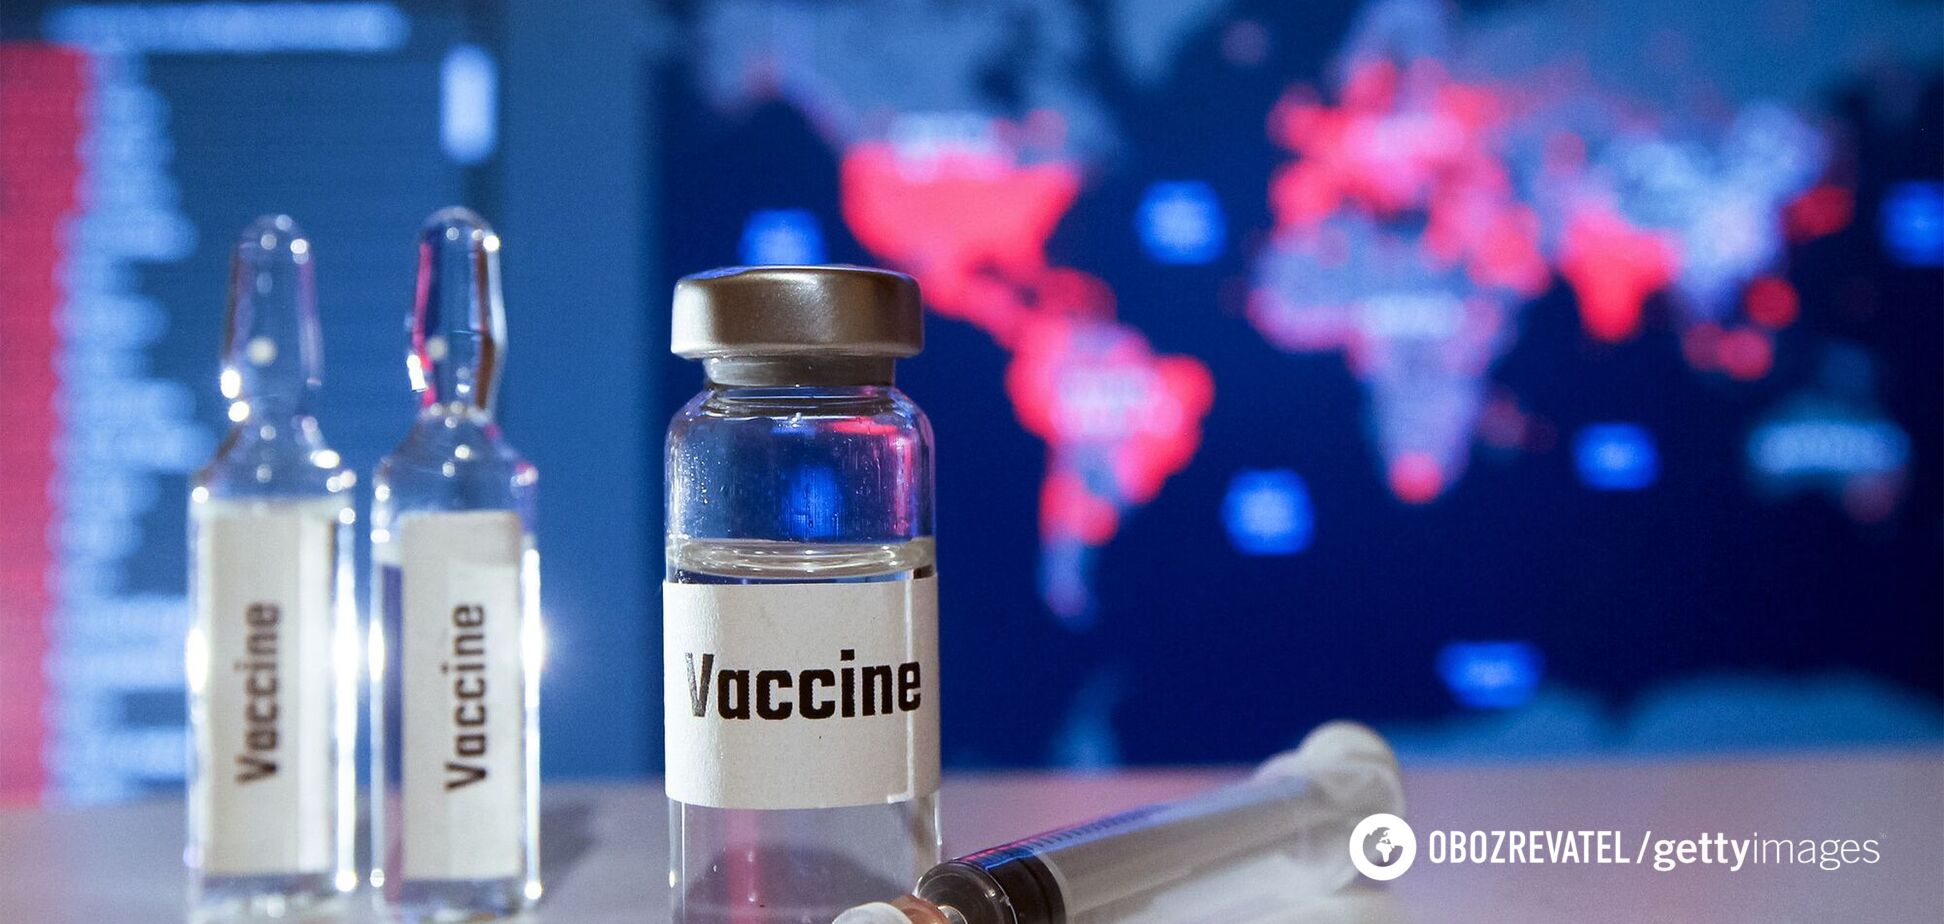 Вакцина есть в Украине, но делать прививку сейчас не рекомендую